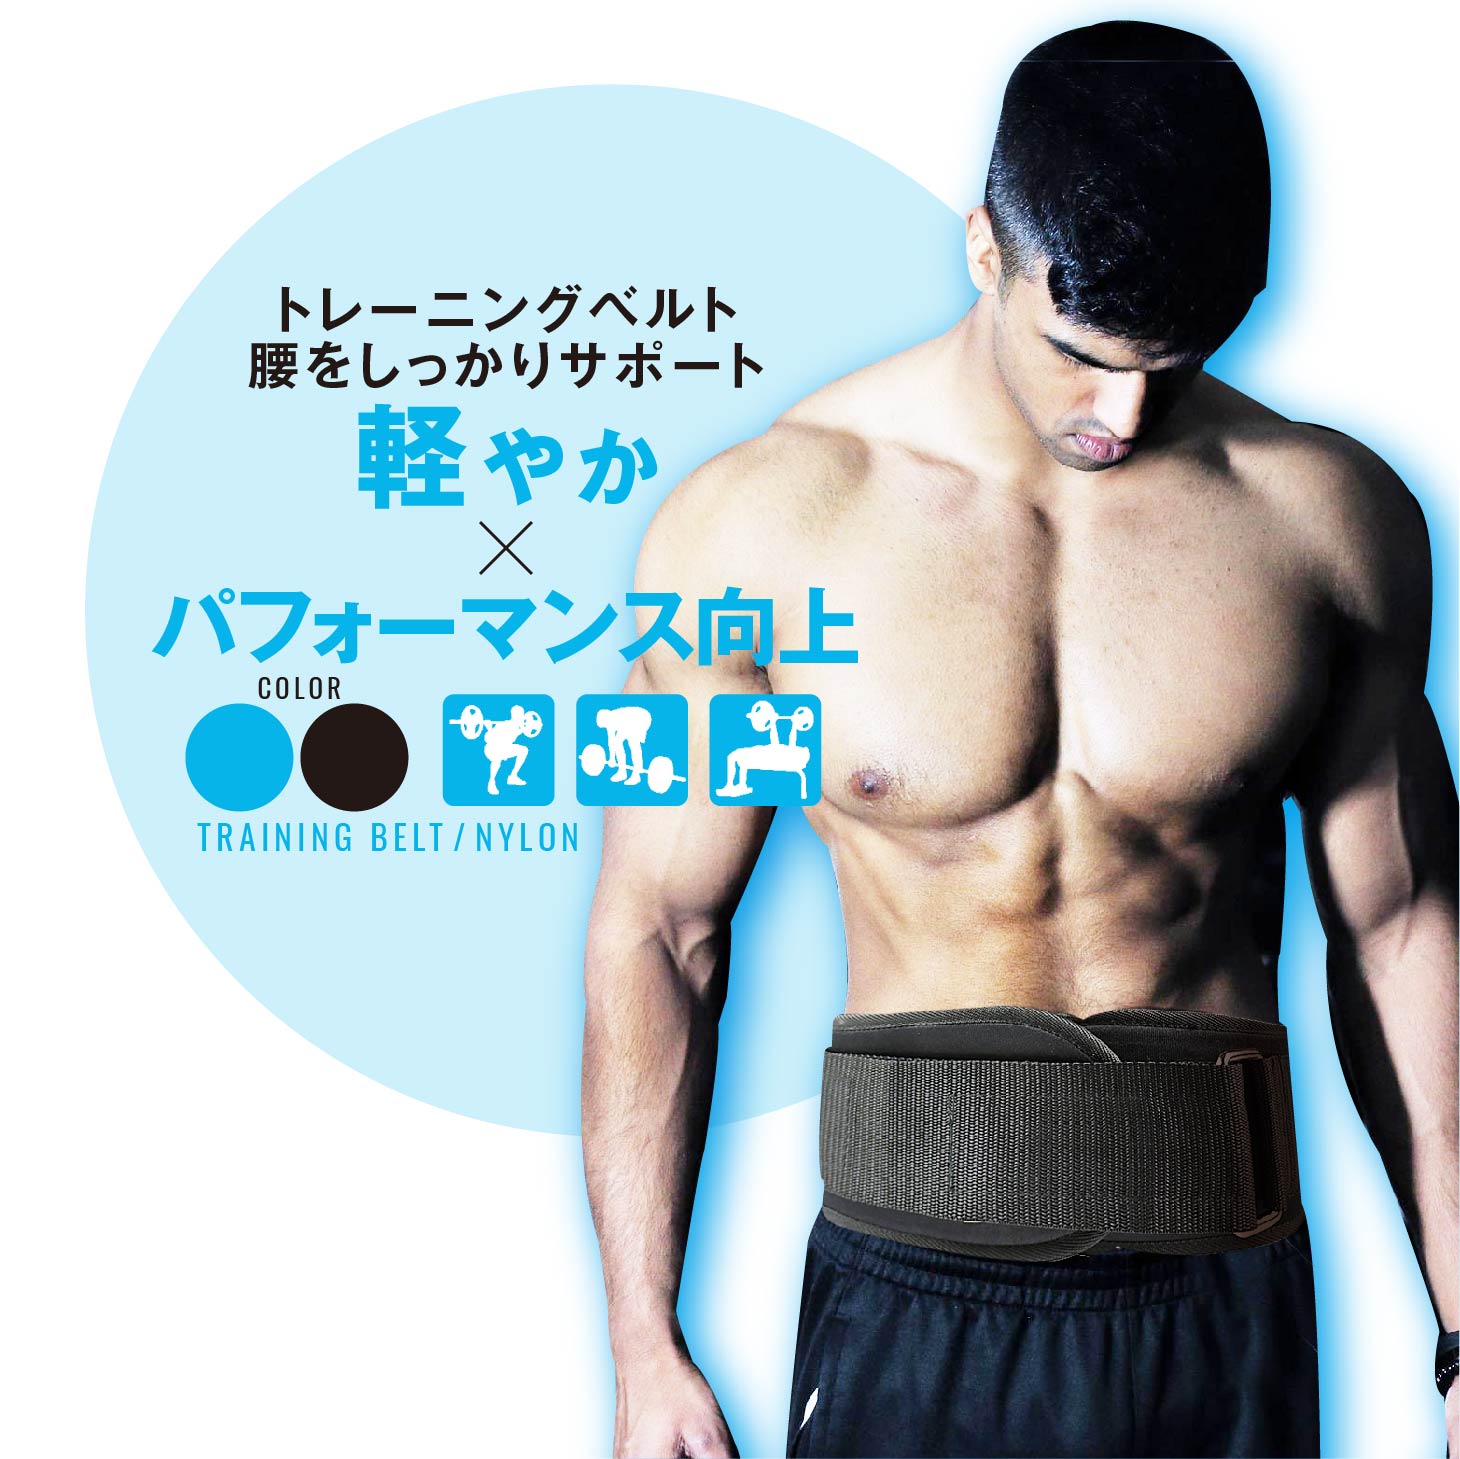 日本製 ウエイトトレーニングベルトレザーリフティングレバースクワットジム筋肉腰筋トレパワーベルトケガ予防トレーニング用品デッドリフ 